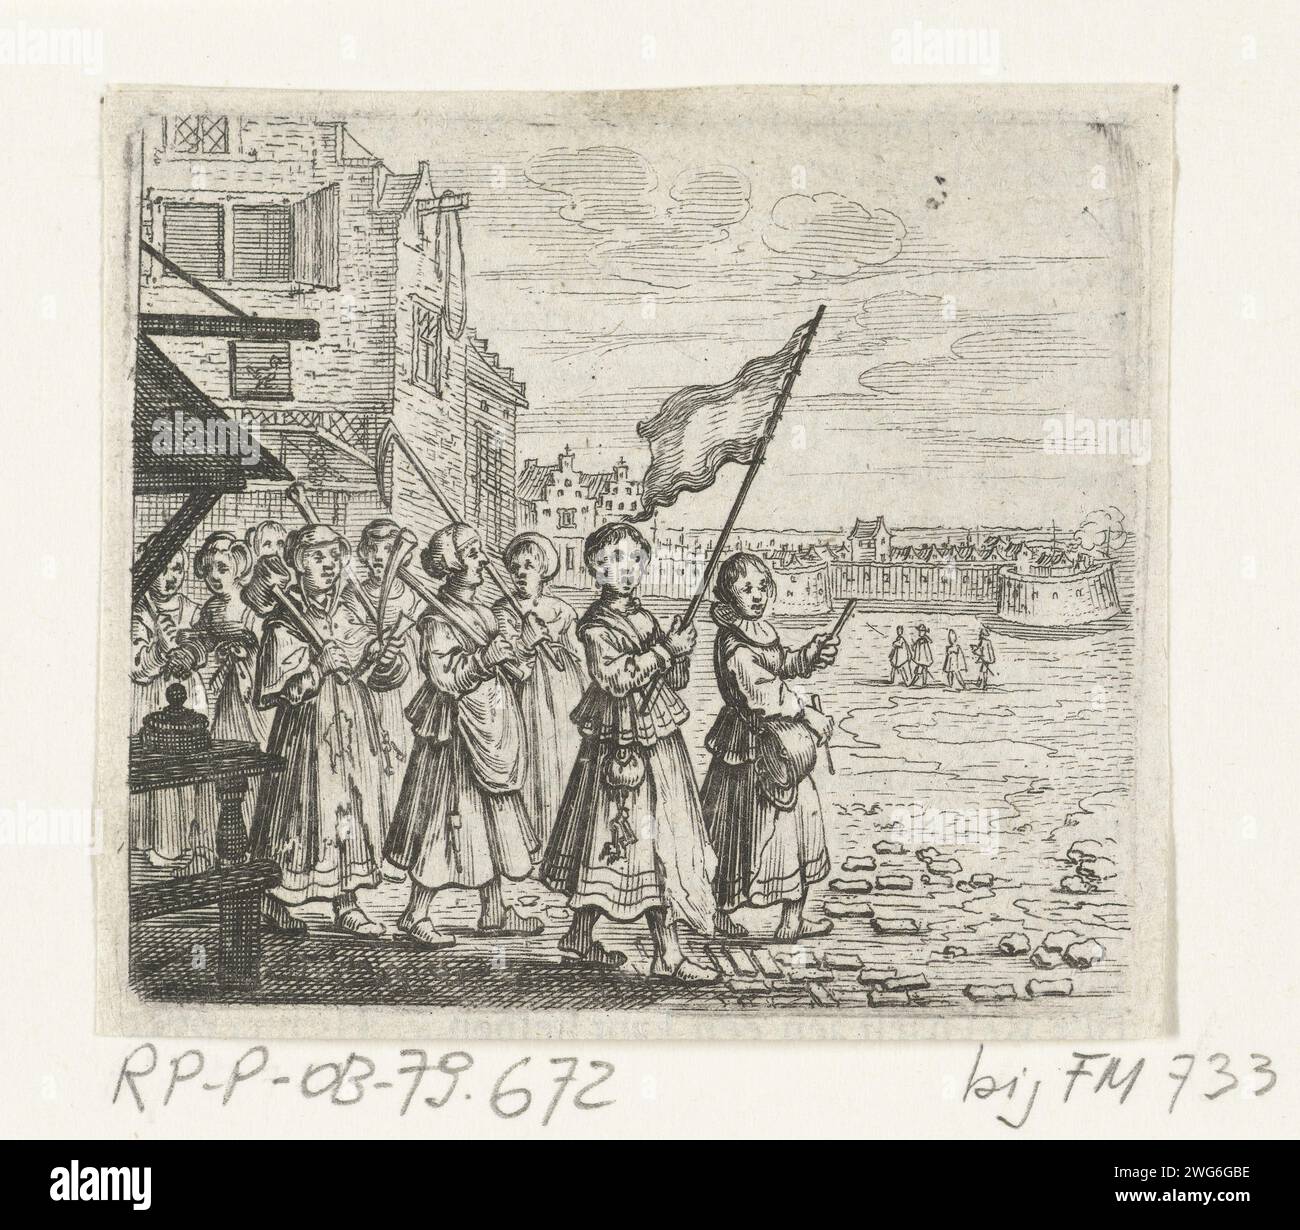 Trijn van Leemput se rend avec un groupe de femmes au château de Vredenburg, 1577, 1637 - 1639 impression avec un groupe de femmes, Trijn van Leemput se rend avec des marteaux et des pickaxes au château de Vredenburg, le 2 mai 1577. Comme une femme avec un drapeau et une femme qui frappe une bouilloire, en arrière-plan le château assiégé. Illustration découpée d'un livre, imprimée au dos avec texte en néerlandais. Nord des pays-Bas gravure de papier Vredenburg Banque D'Images